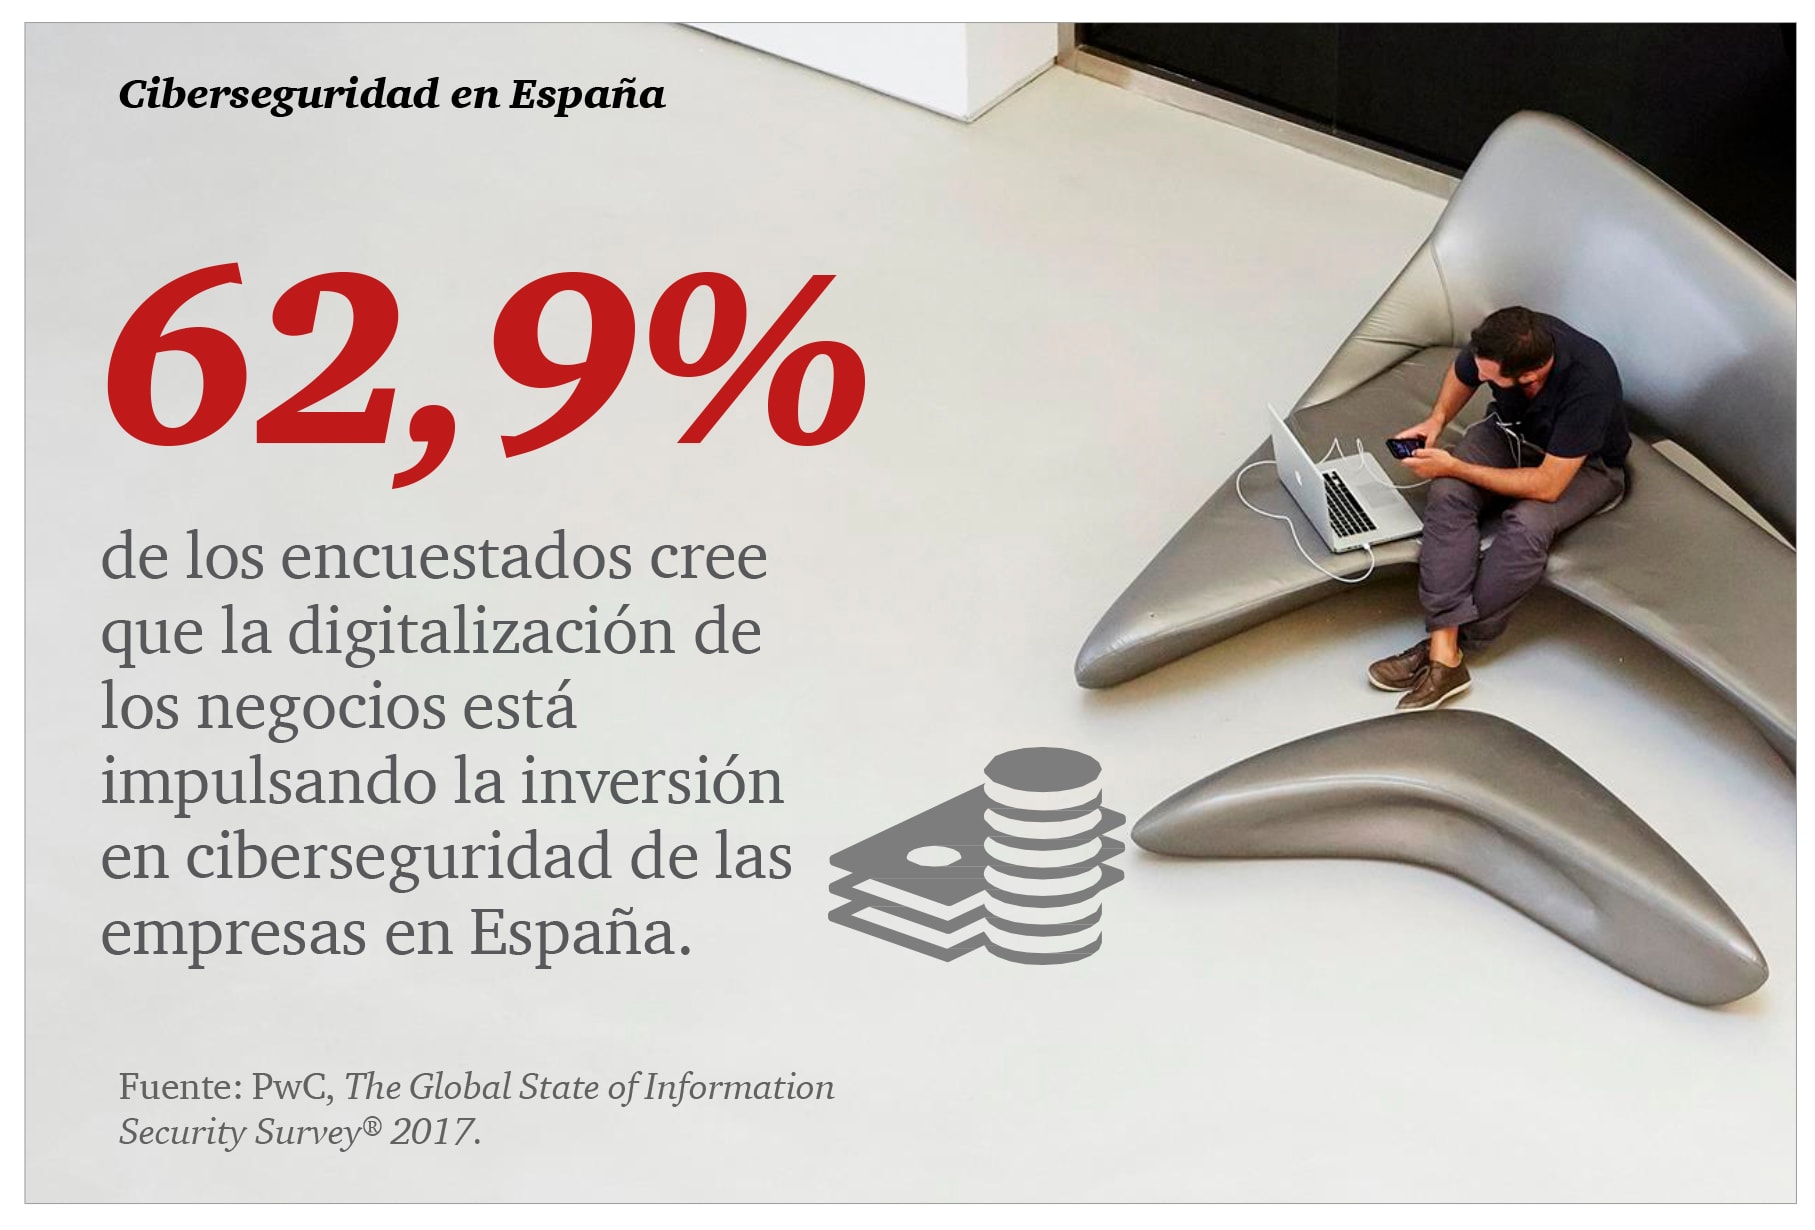 el 62,9% de los encuestados cree que la digitalización de los negocios está impulsando la inversión en ciberseguridad de las empresas en España